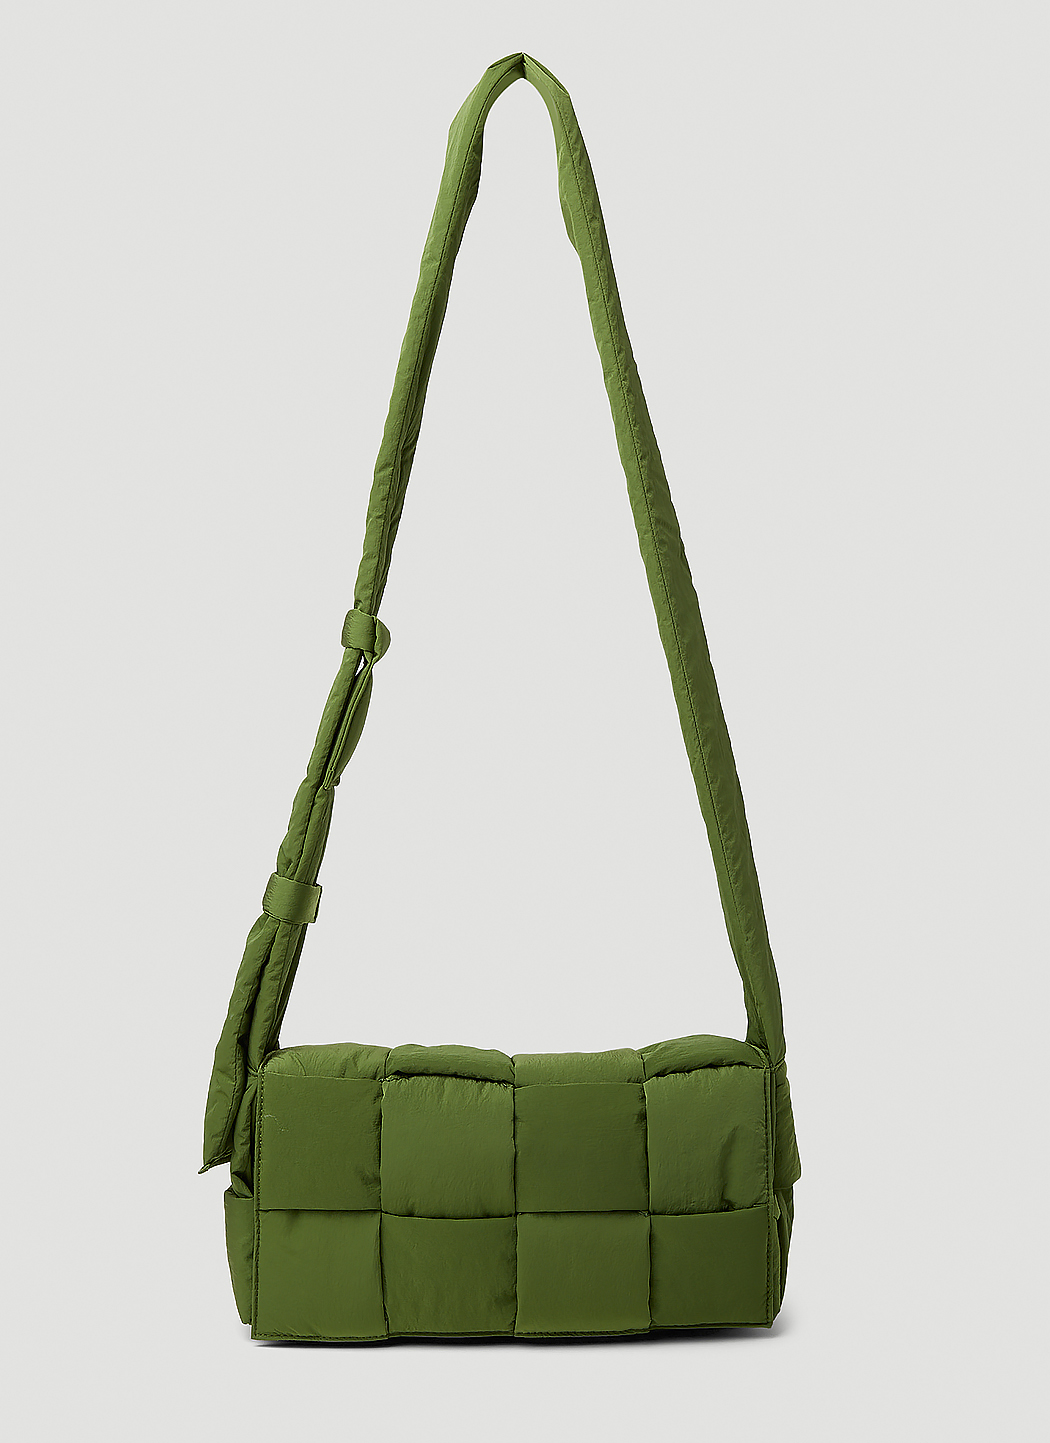 Bottega Veneta Padded Cassette Crossbody Bag in Green